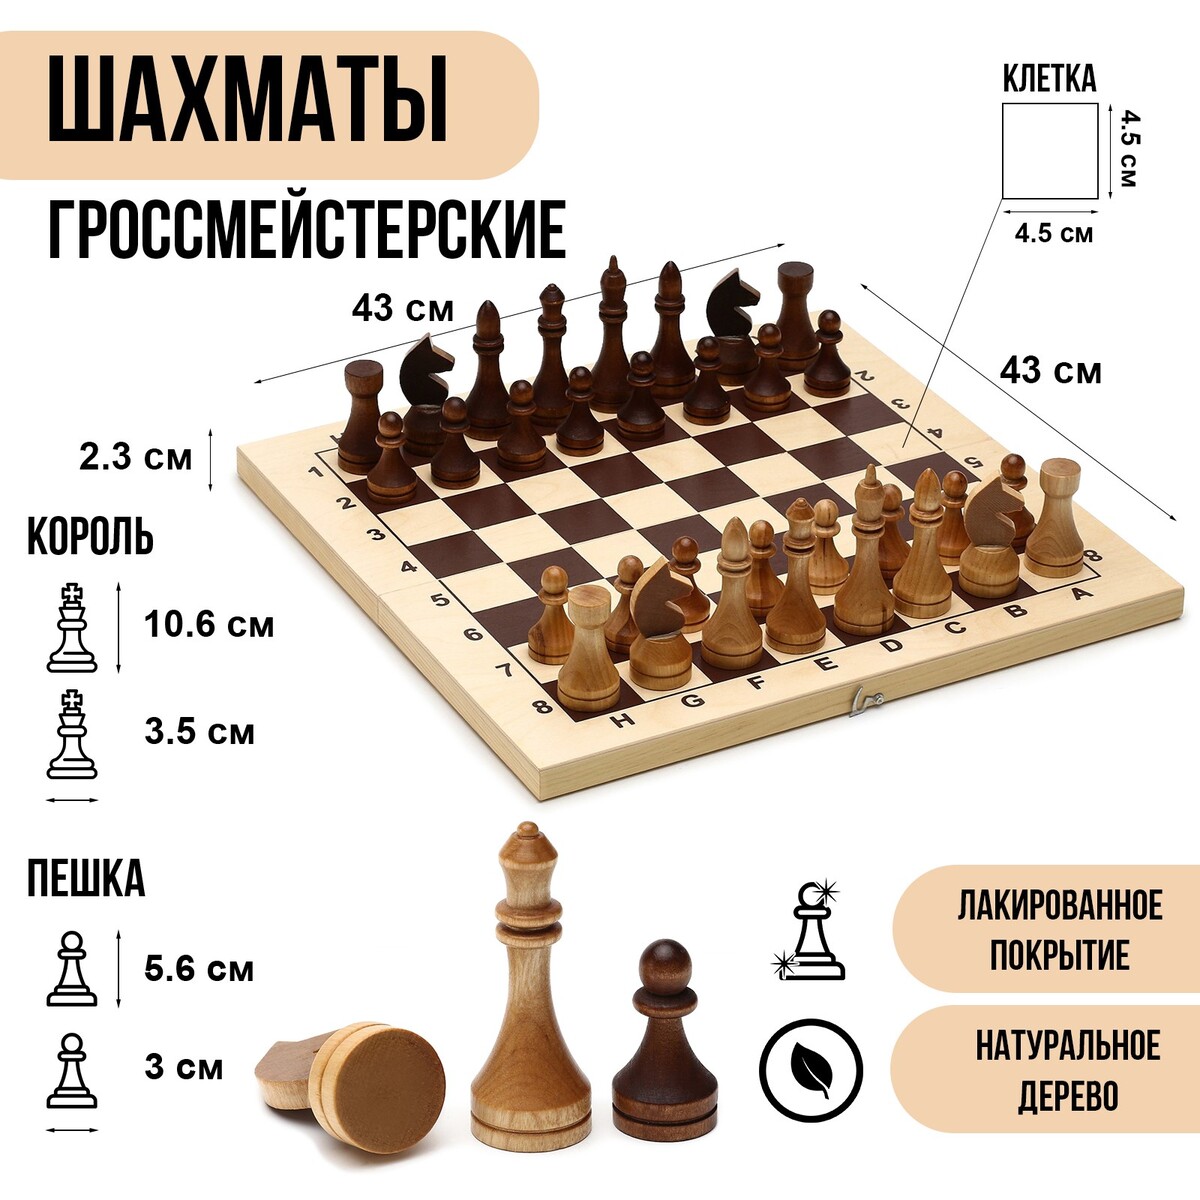 Шахматы деревянные гроссмейстерские, турнирные 43 х 43 см, король h-10.6 см, пешка h-5.6 см шахматы деревянные 40 х 40 см